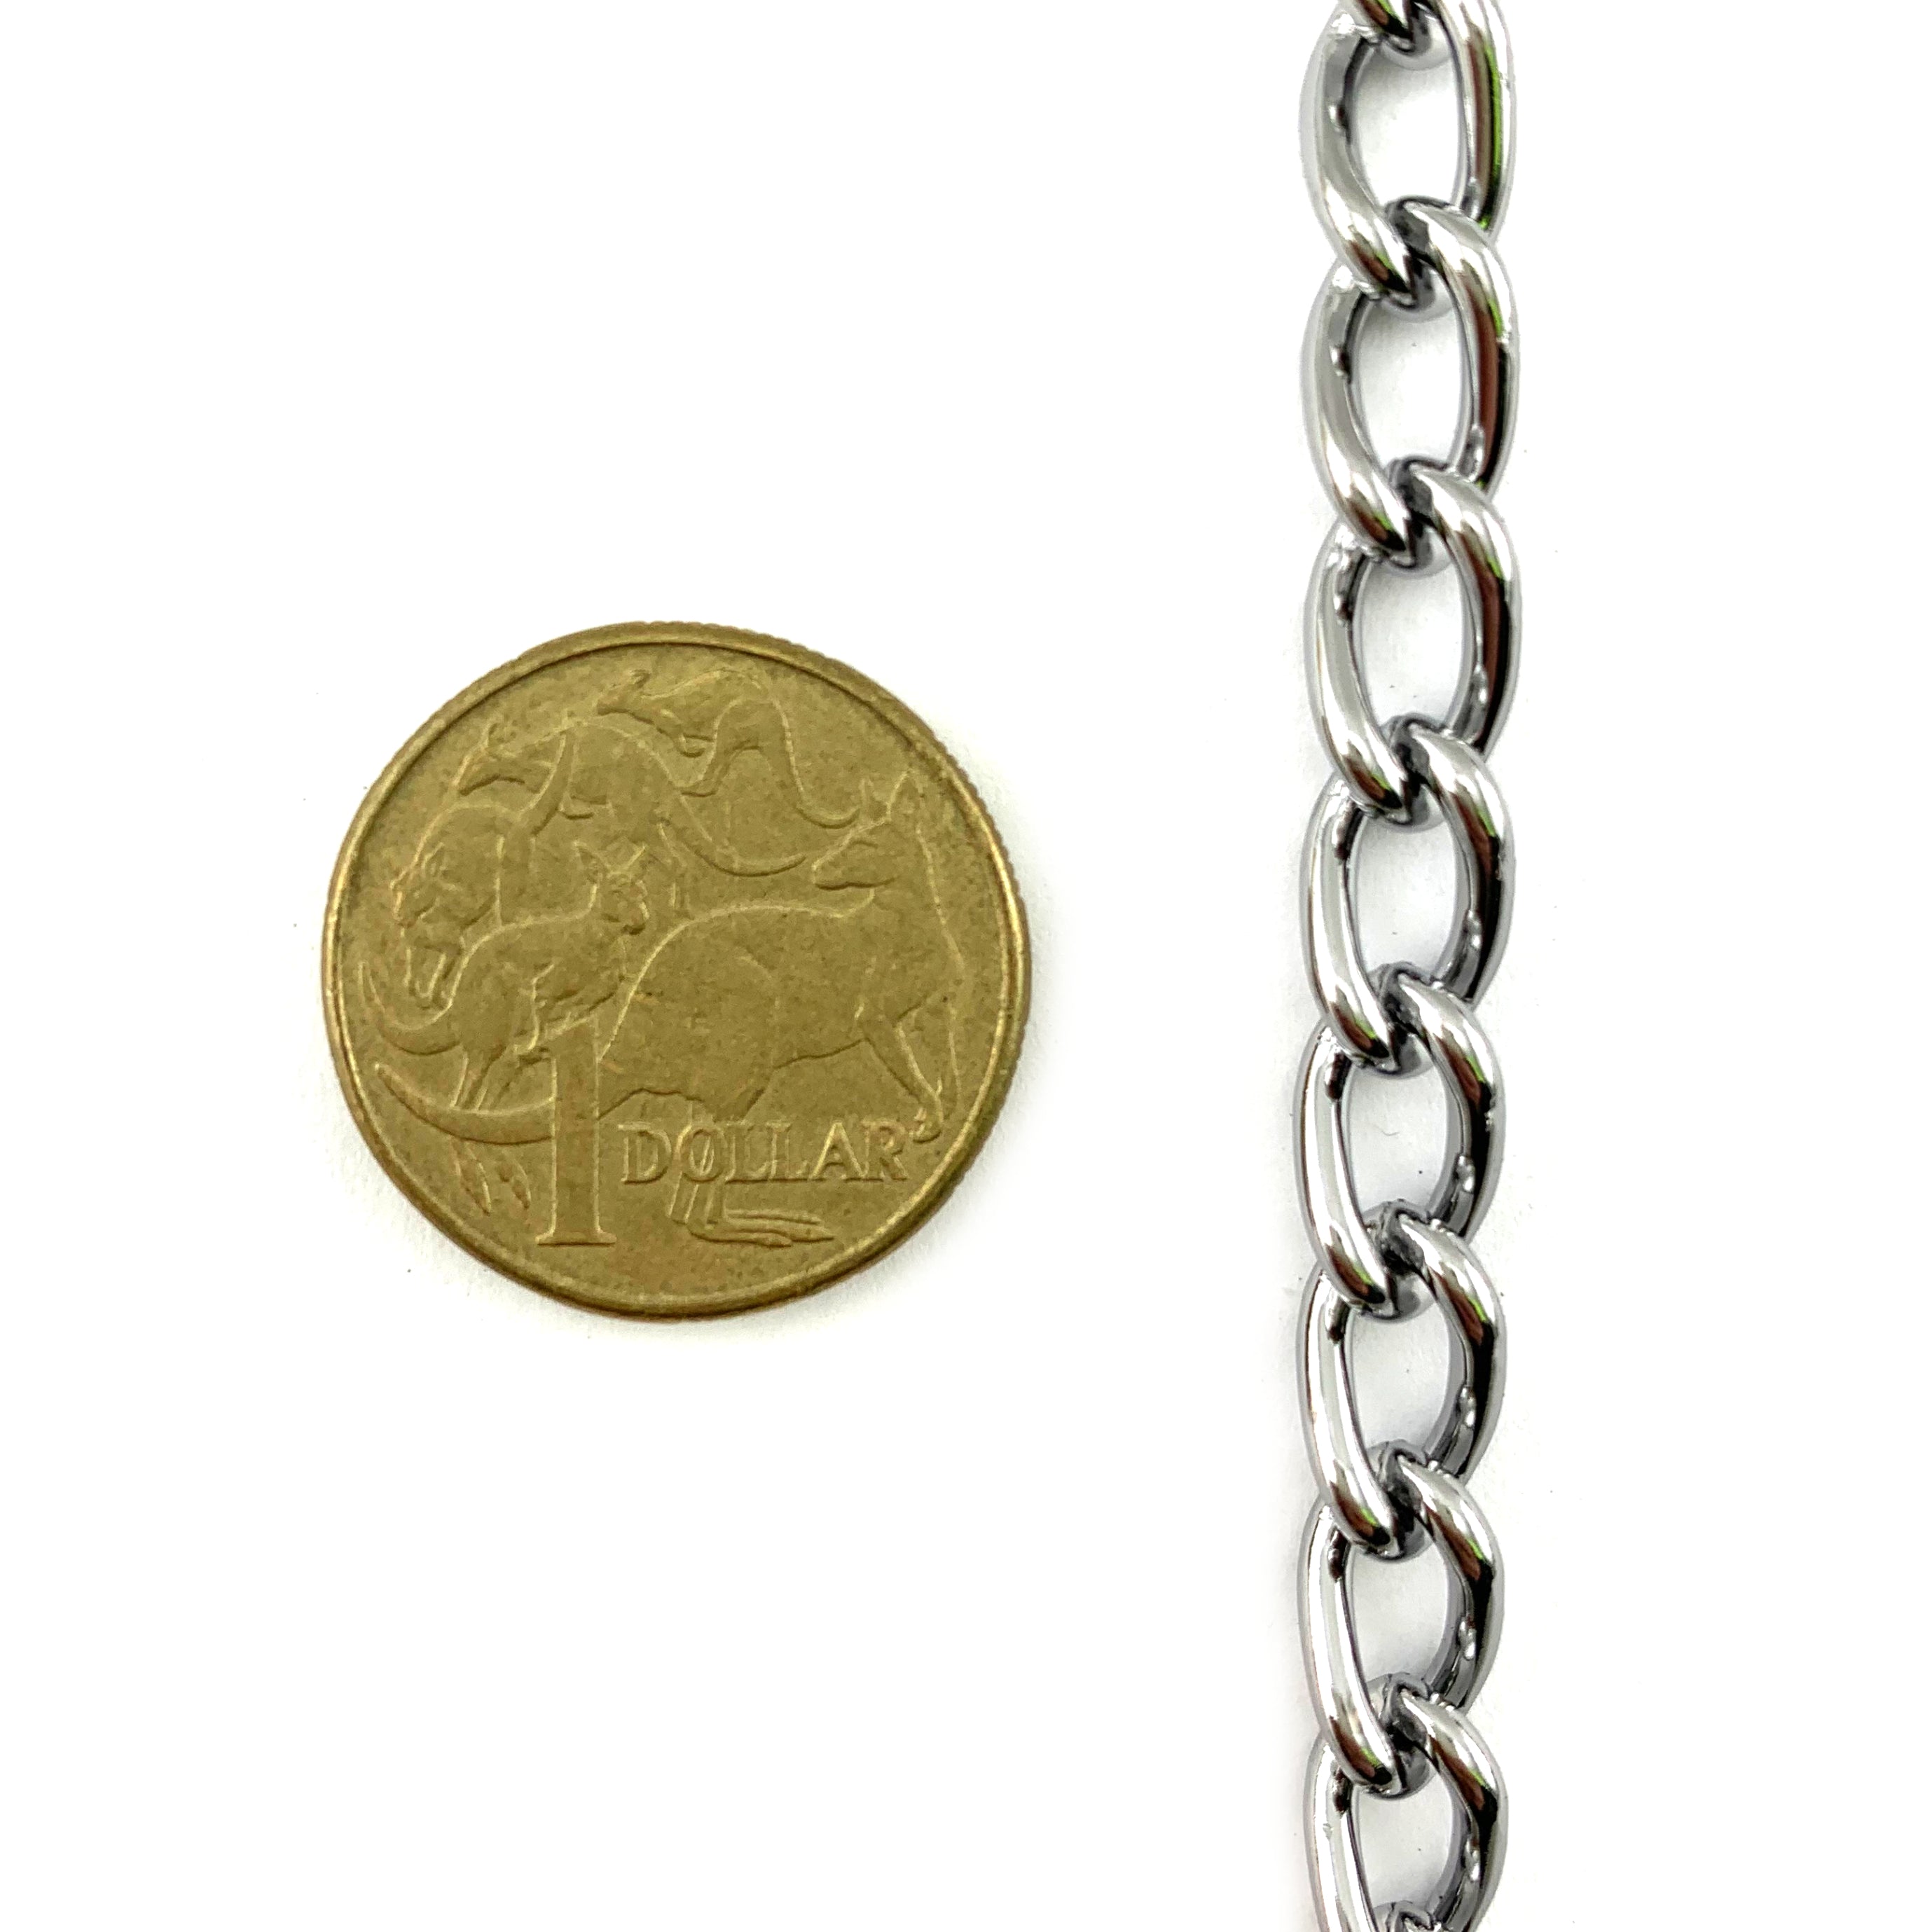 Chrome Curb Chain, 2mm x 30m. Decorative Chain Australia wide delivery